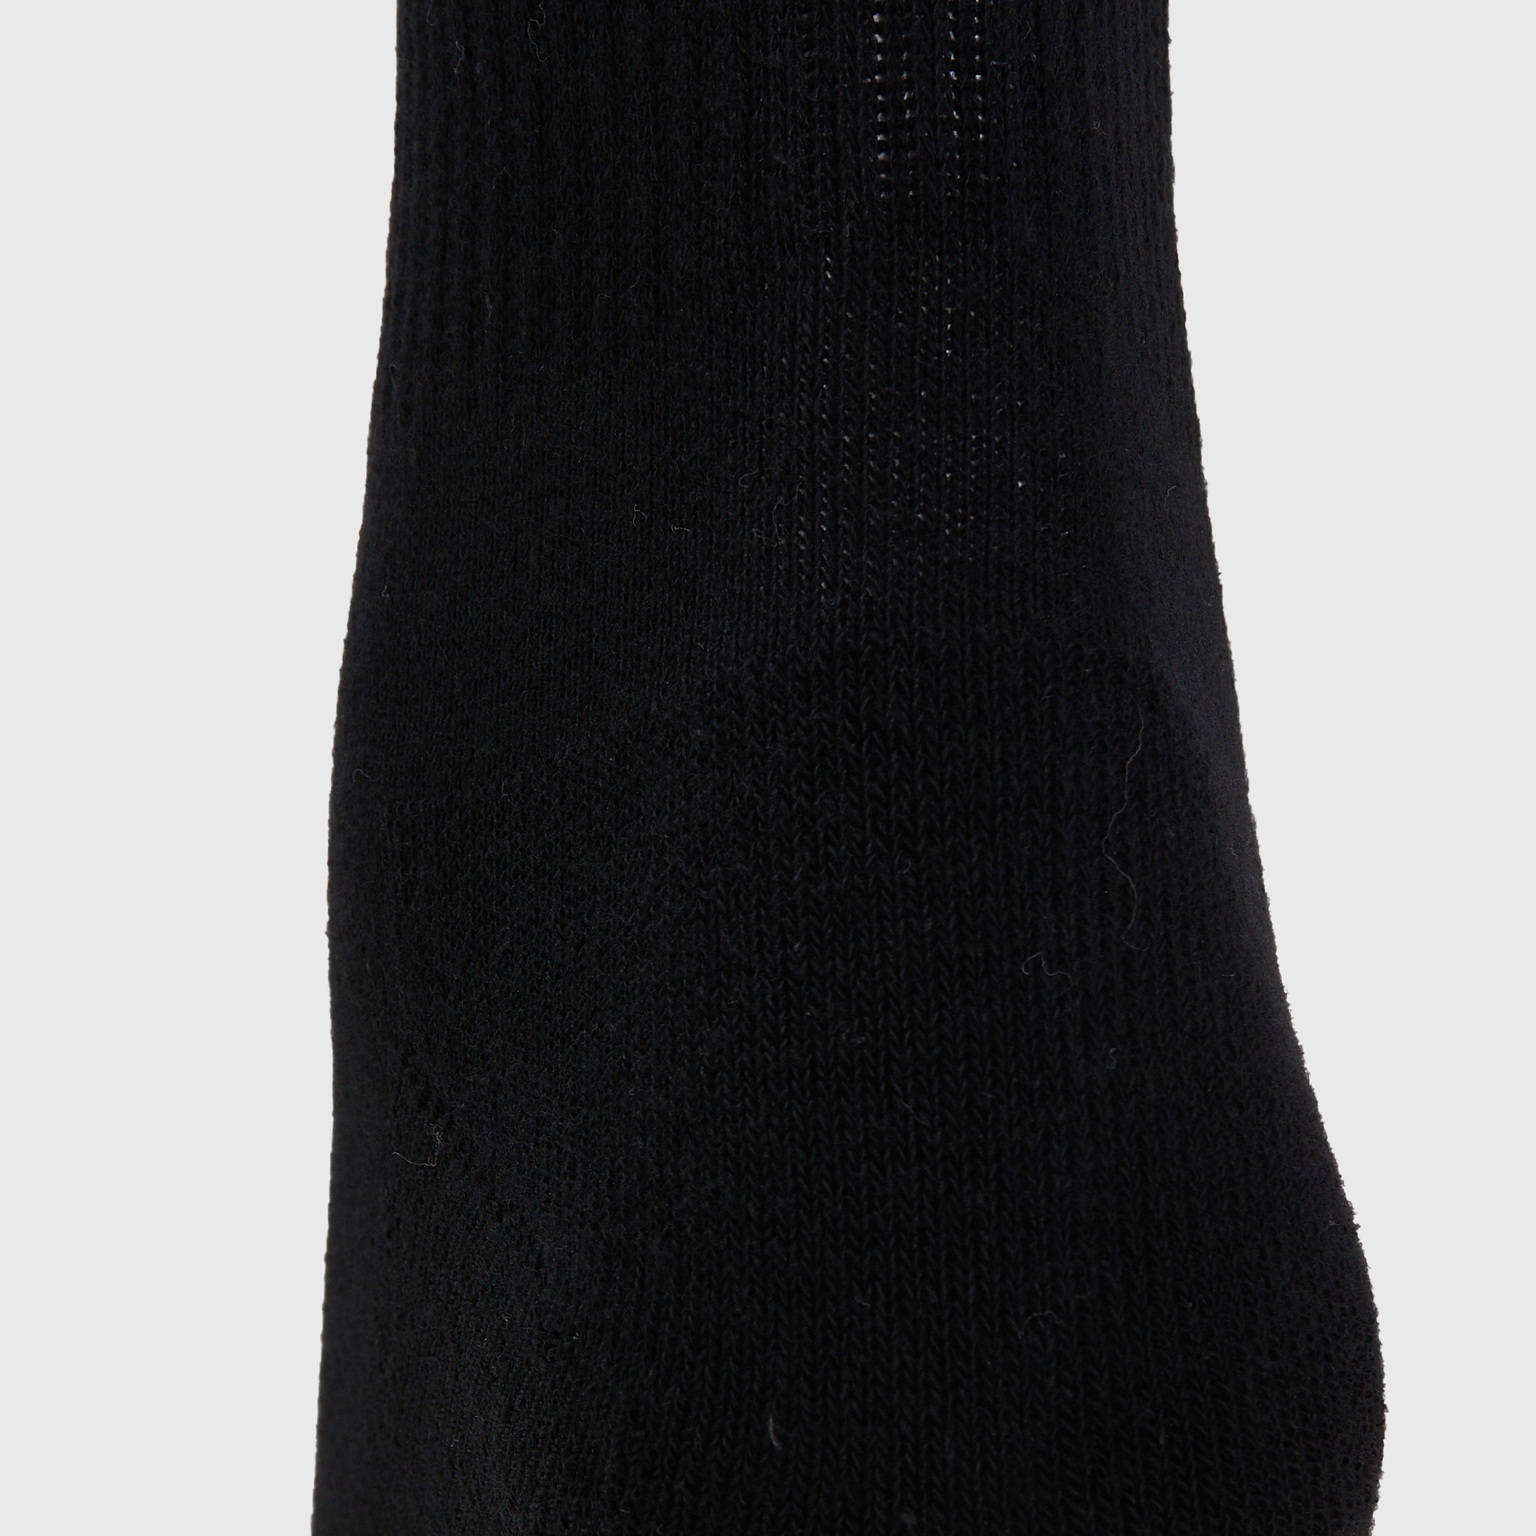 Комплект носков (3 пары) Fila Adult 126641-BW